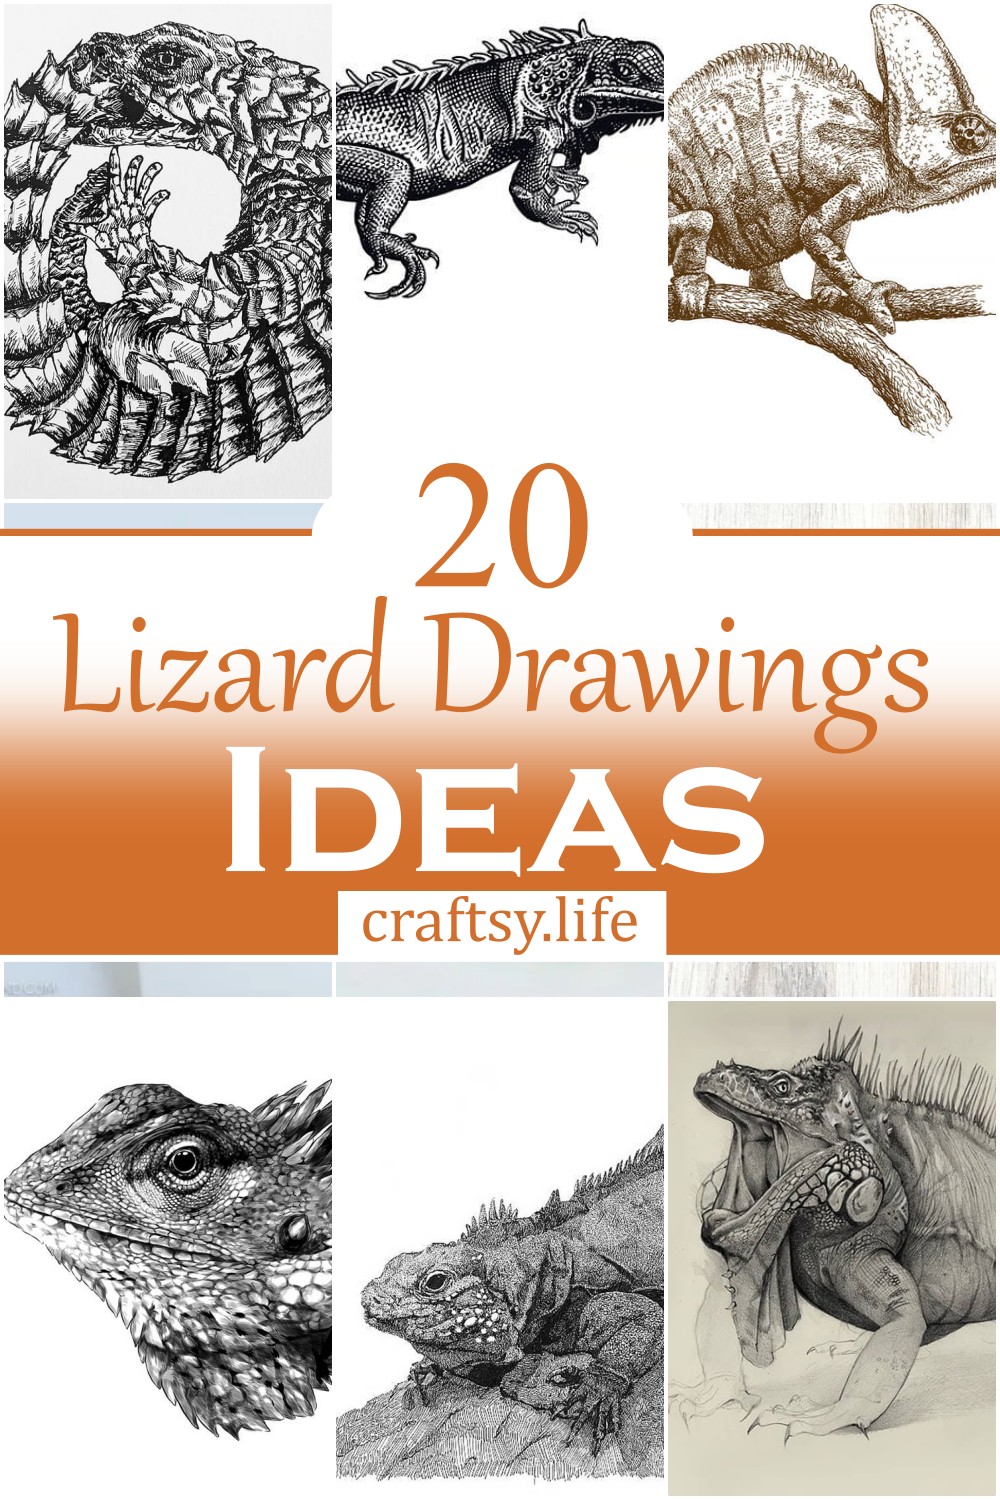 Lizard Drawings Ideas